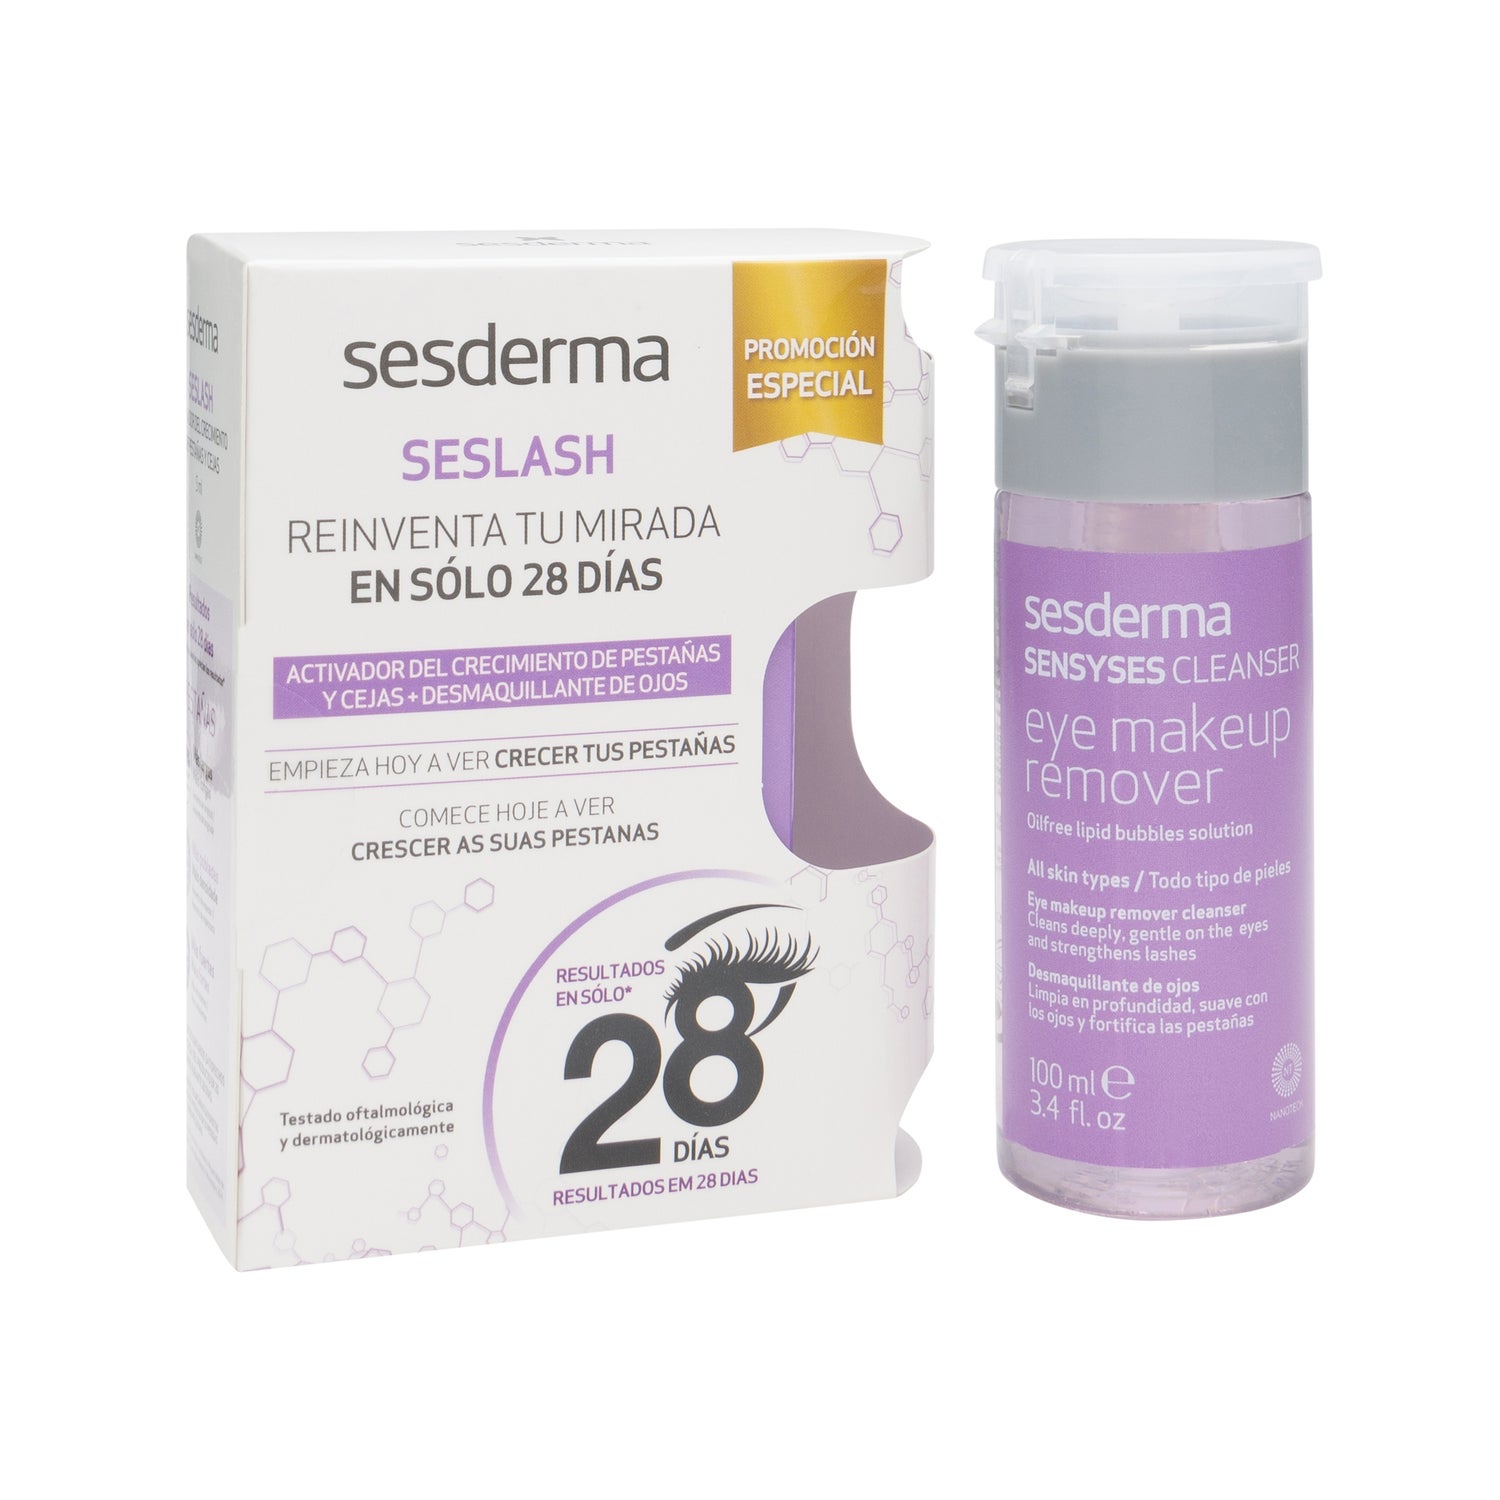 sesderma seslash serum liposomado 5ml sensyses cleanser 100ml